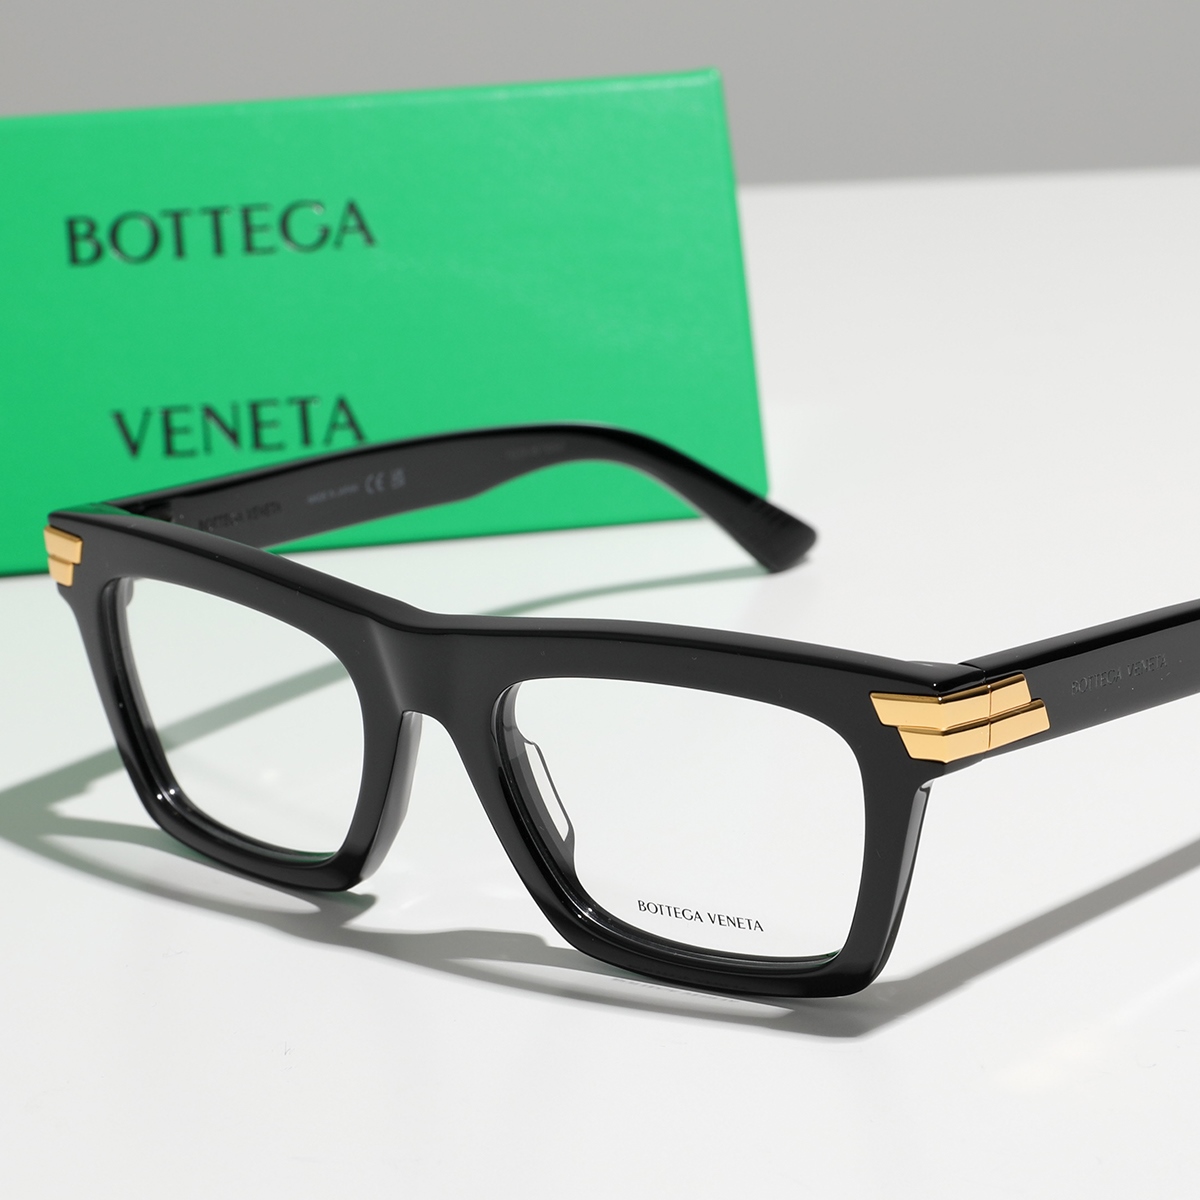 【返品保証対象】BOTTEGA VENETA ボッテガヴェネタ メガネ BV1059O メンズ スクエア型 伊達メガネ 眼鏡 めがね 黒縁メガネ アイウェア 001/BLACK-BLACK-T